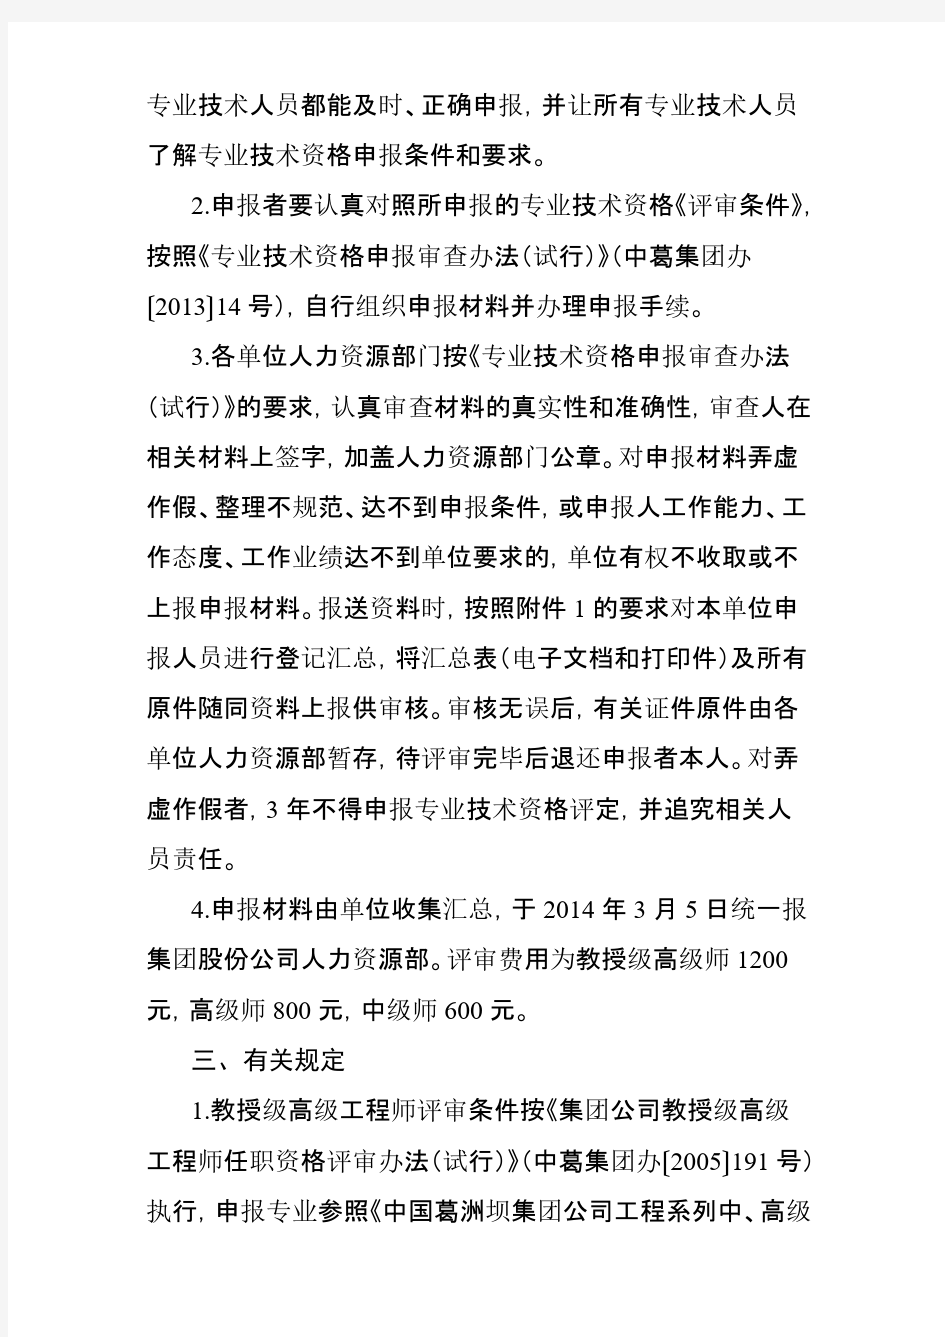 中国葛洲坝集团股份有限公司职称评审文件